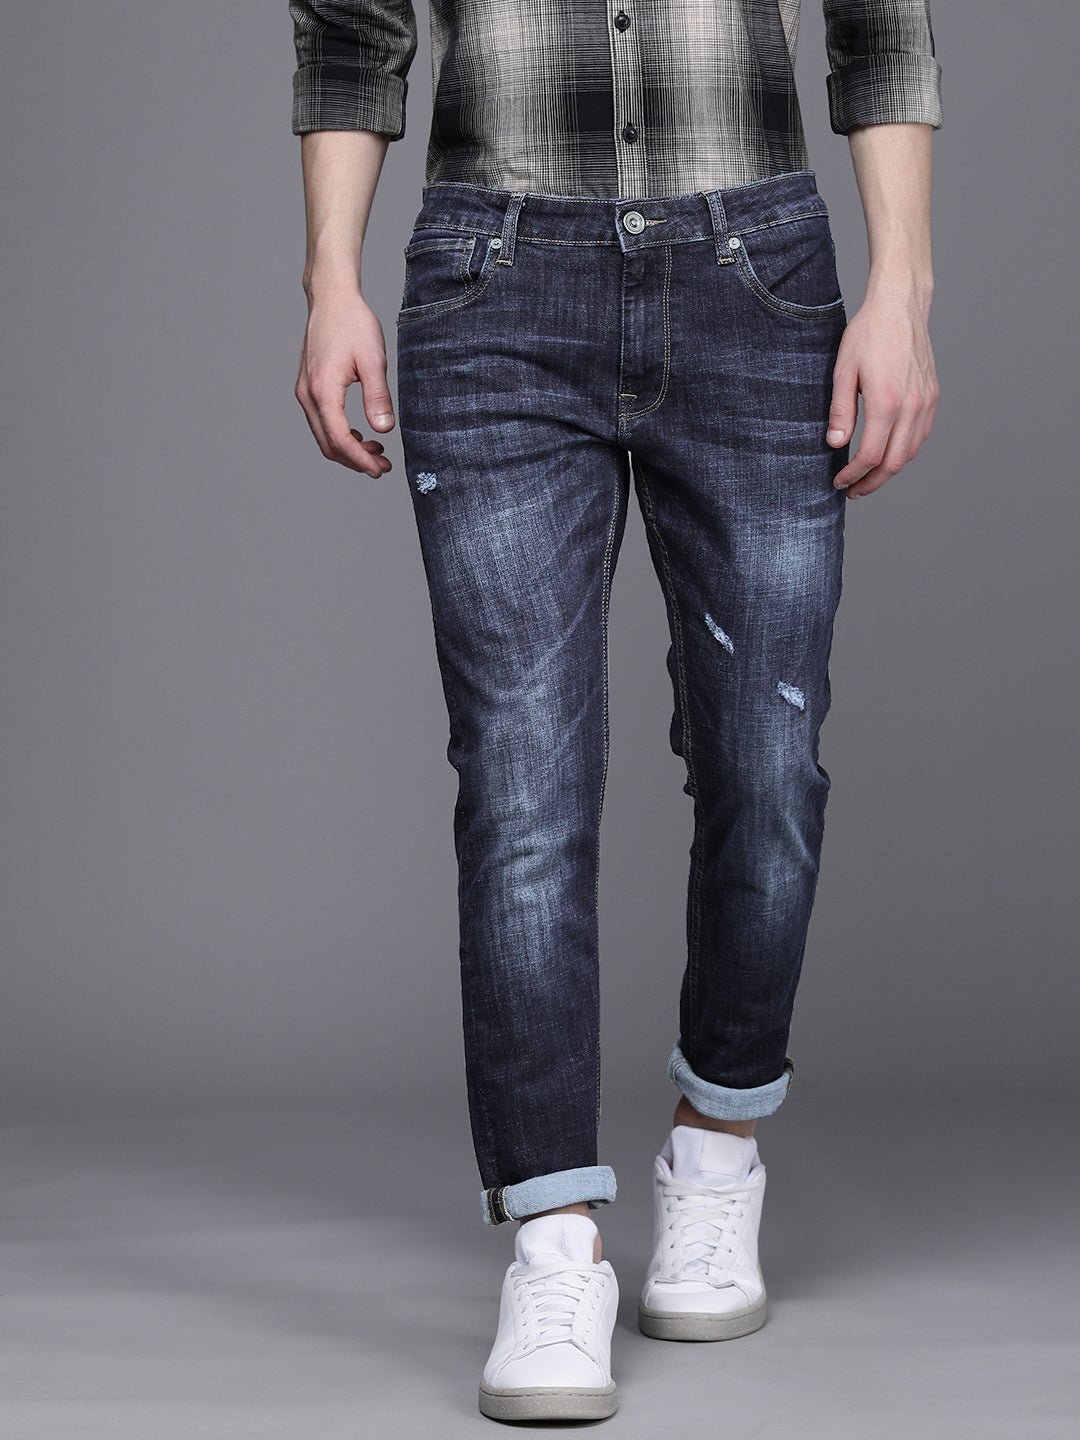 VOI JEANS | Men's Dark Indigo track Skinny Stretchable Jeans (VOJN1624)